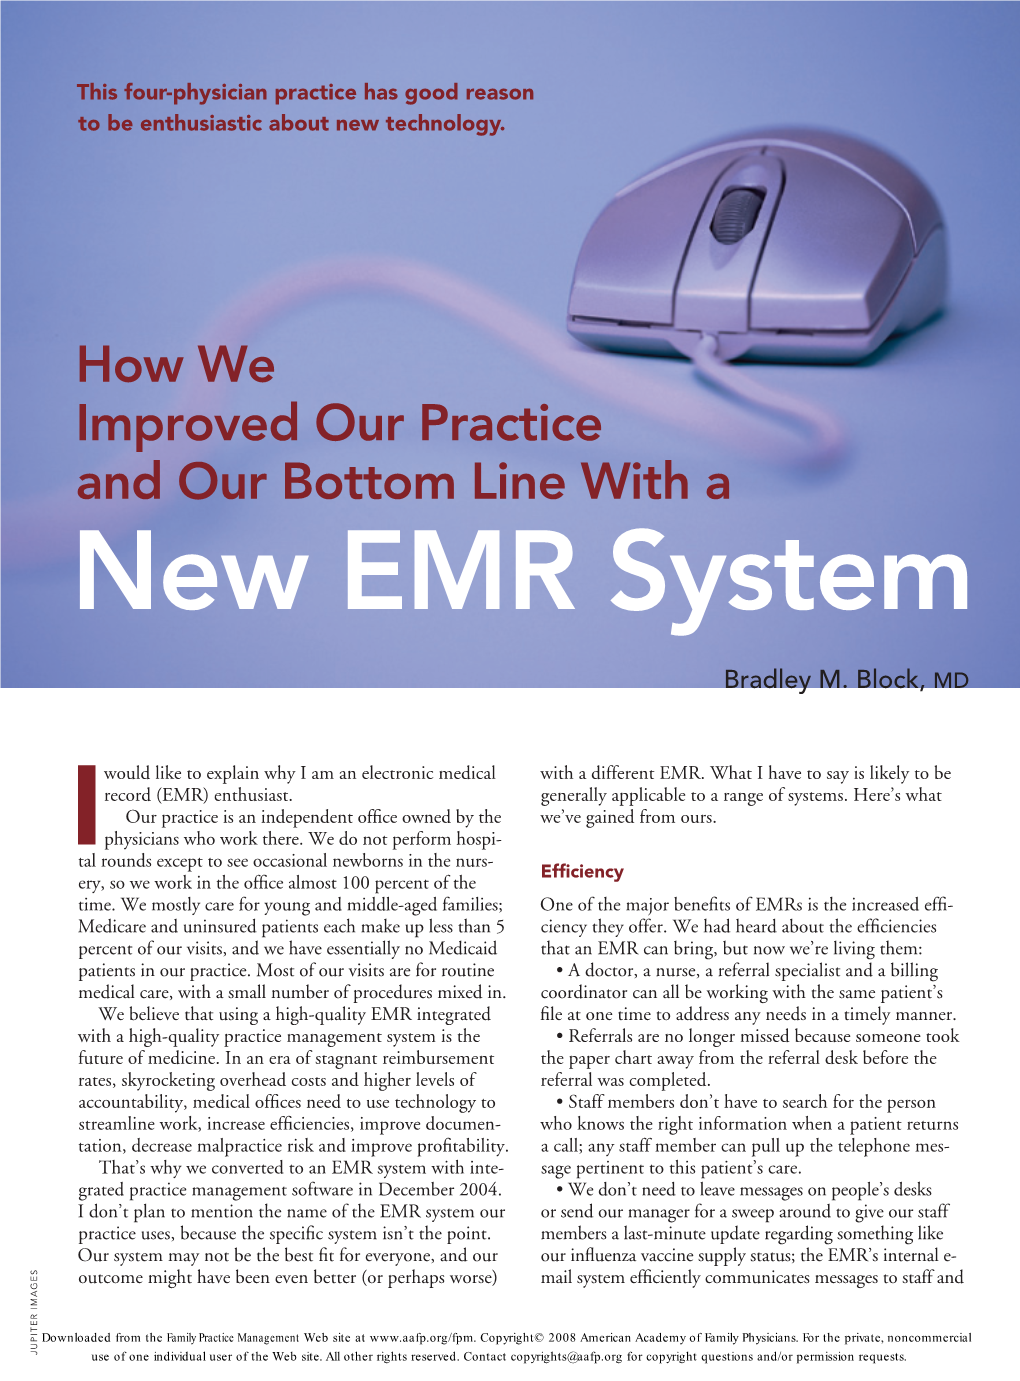 New EMR System